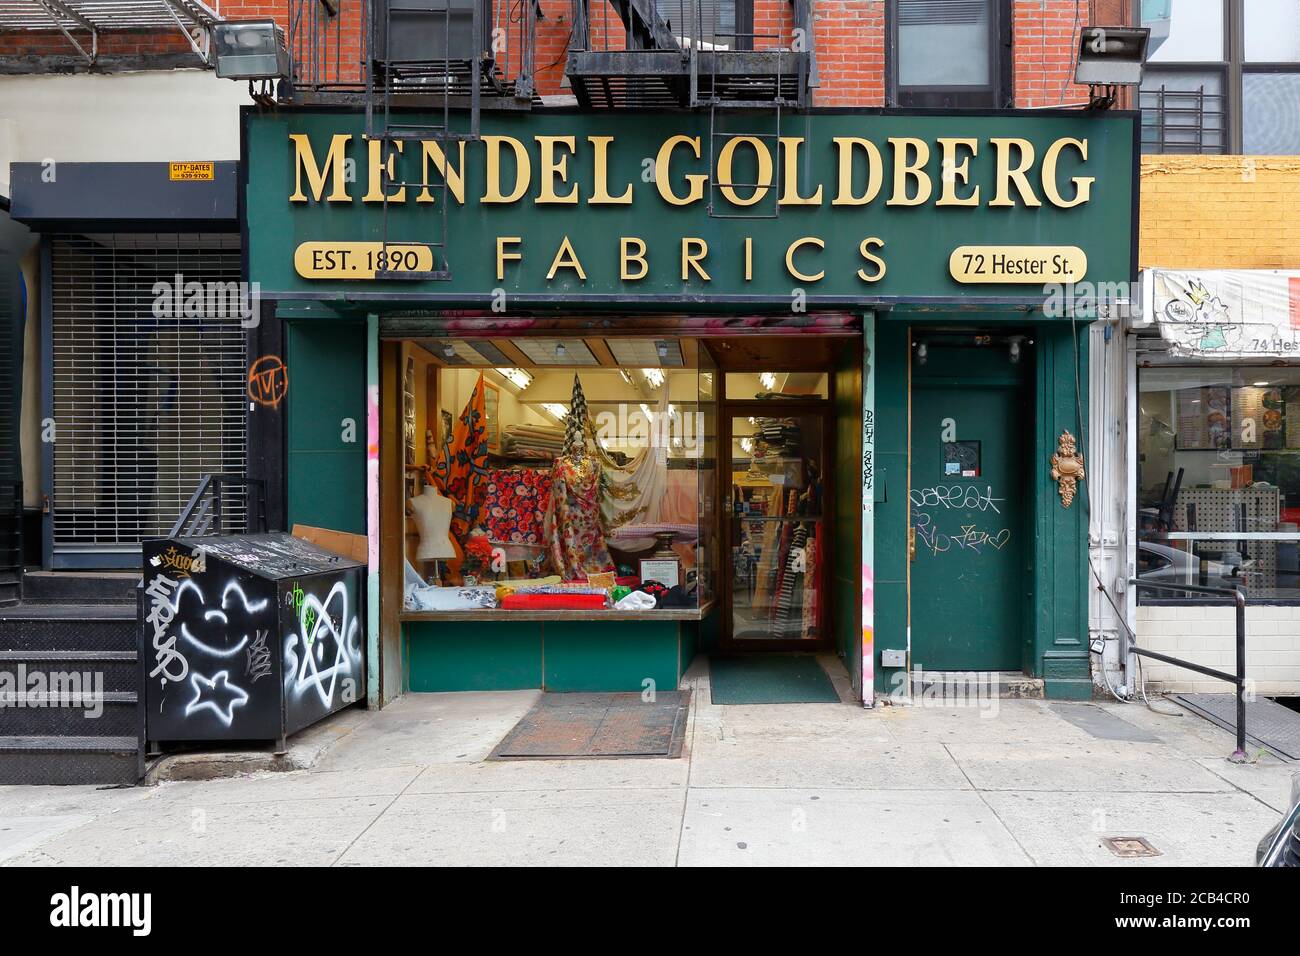 Mendel Goldberg Fabrics, 72 Hester St, New York, NYC Schaufenster Foto eines Stoffladens in Manhattans Lower East Side Nachbarschaft. Stockfoto